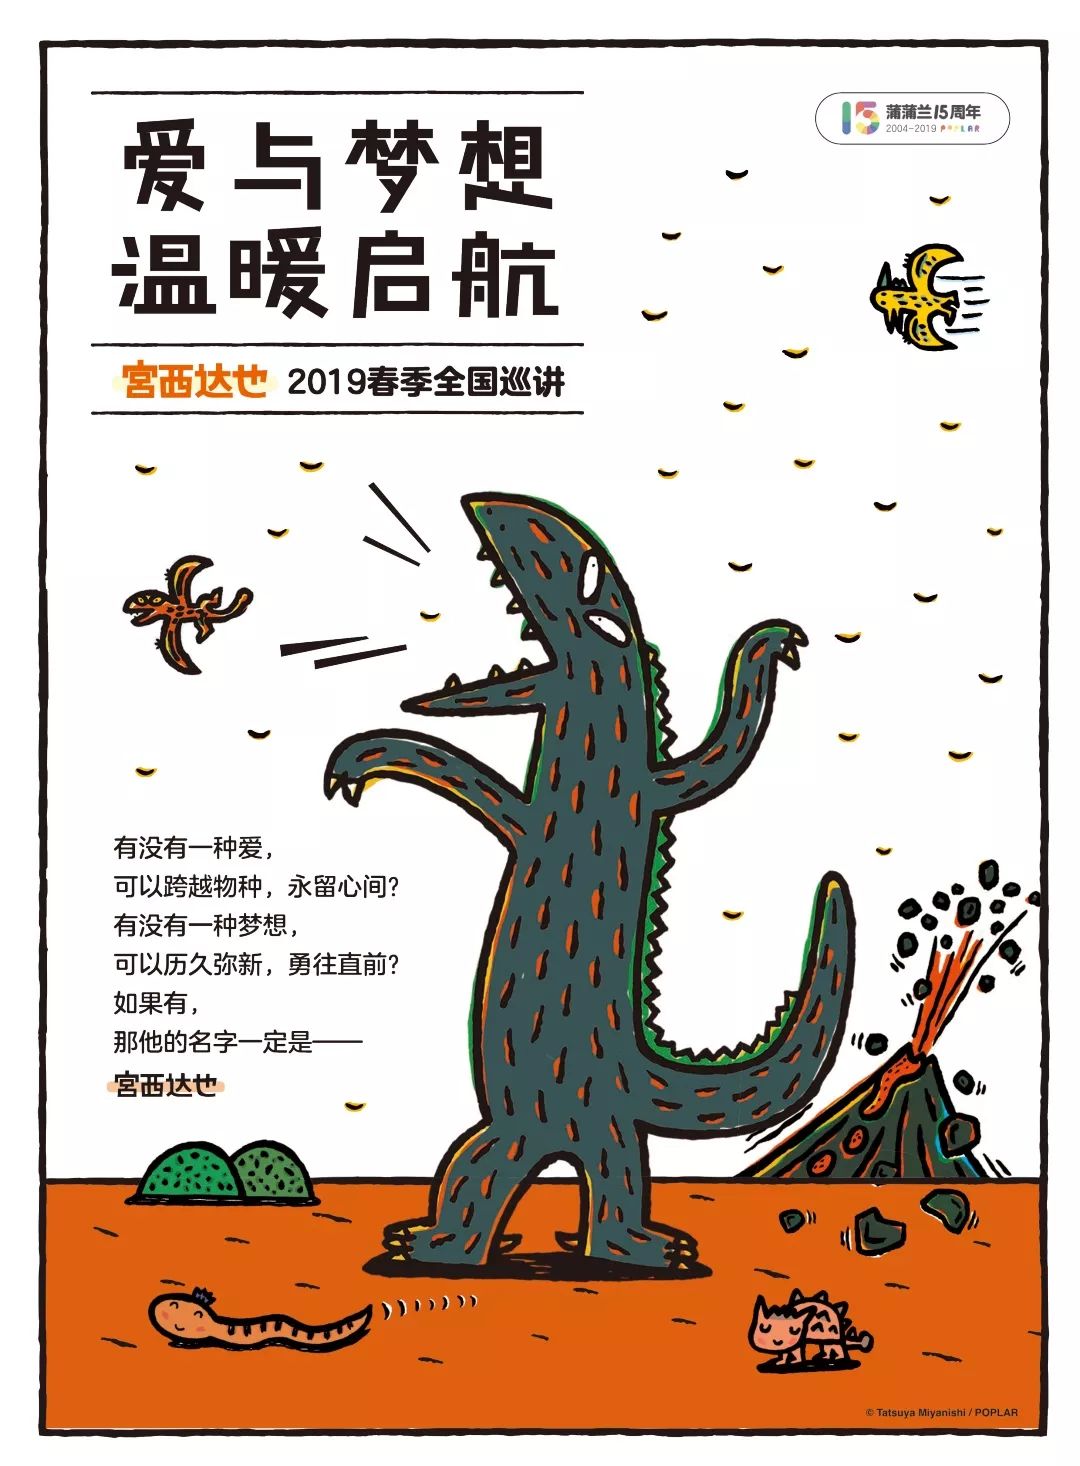 宫西达也武汉2000人场听恐龙爸爸讲恐龙的故事